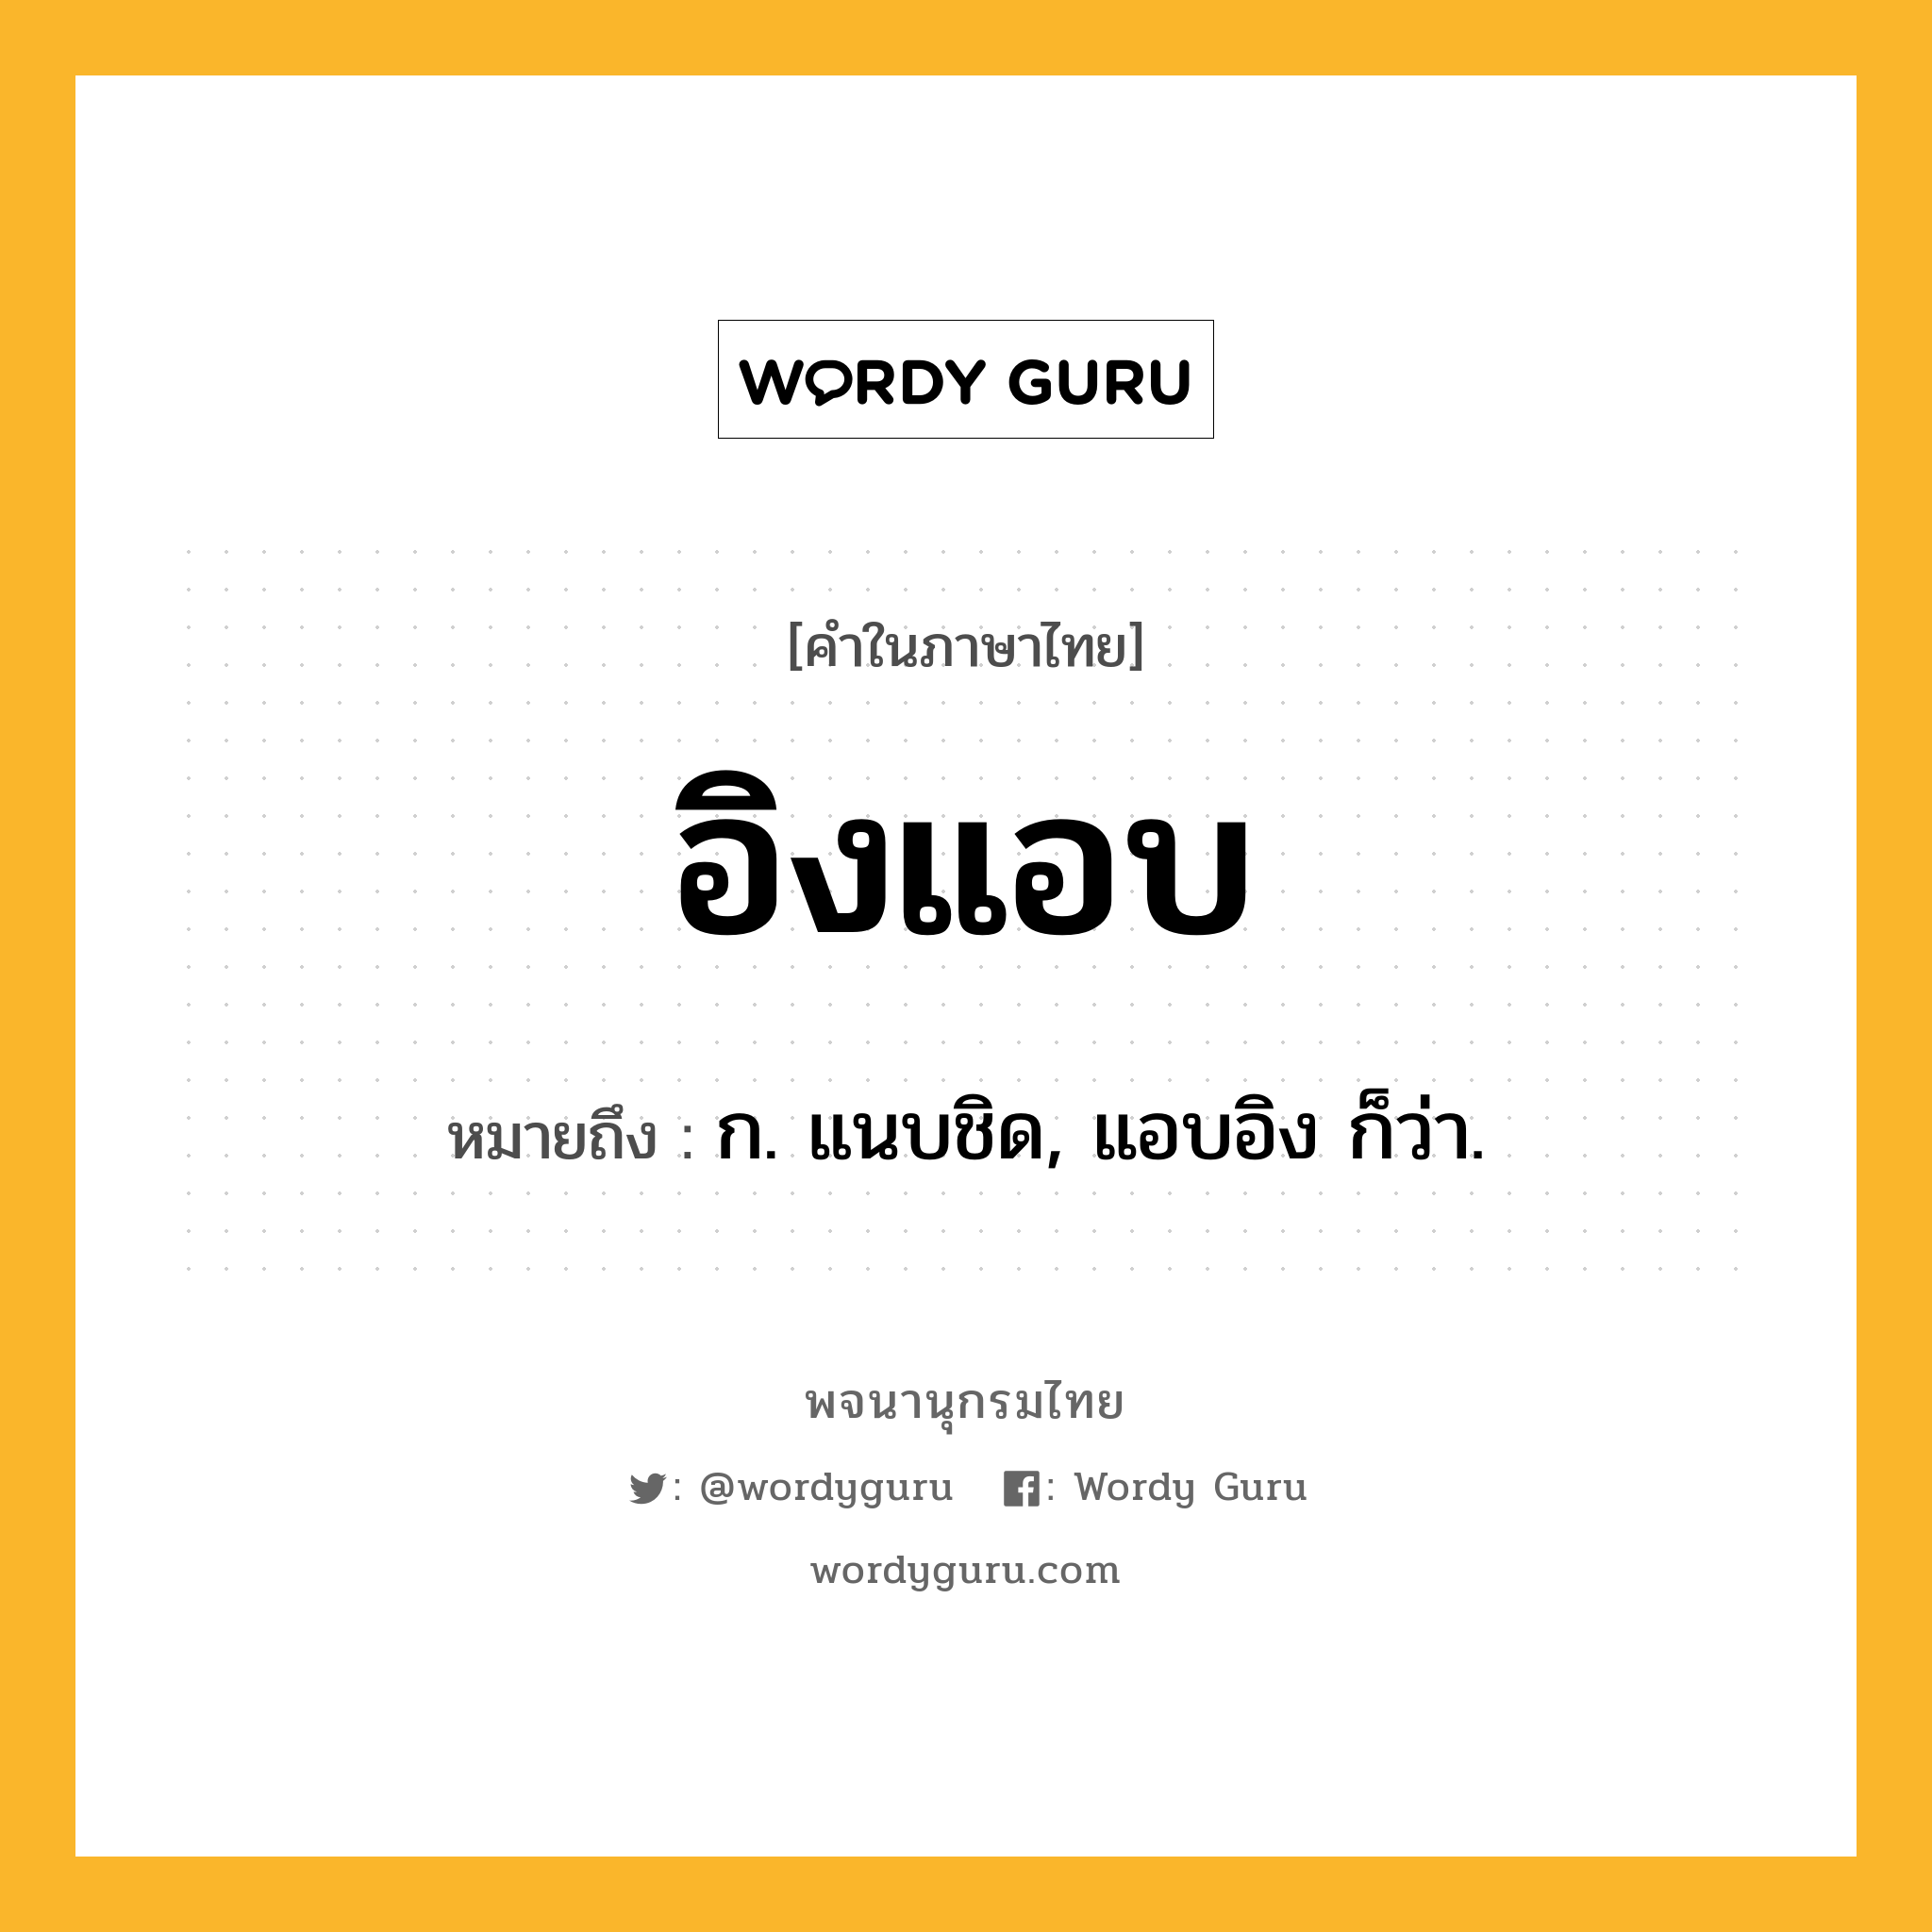 อิงแอบ ความหมาย หมายถึงอะไร?, คำในภาษาไทย อิงแอบ หมายถึง ก. แนบชิด, แอบอิง ก็ว่า.